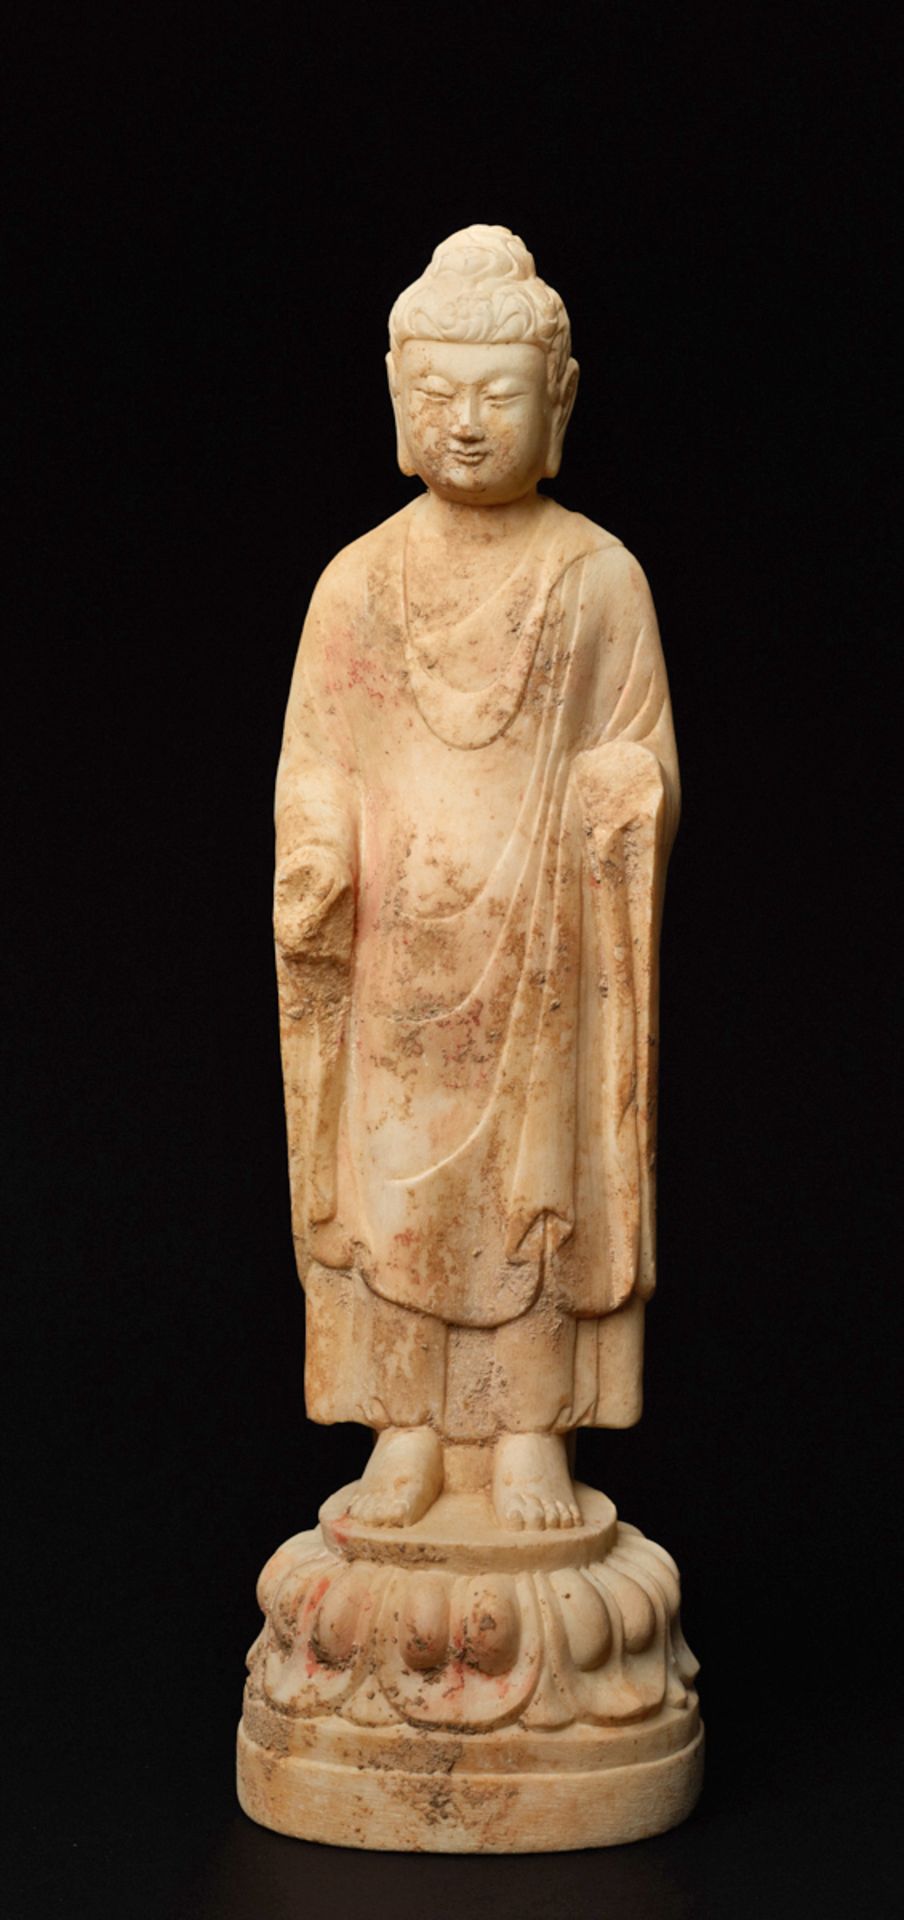 AUF LOTUS STEHENDER BUDDHAWeißer Marmor. China, vermutlich Nördliche Wei-Dynastie (385 -535)